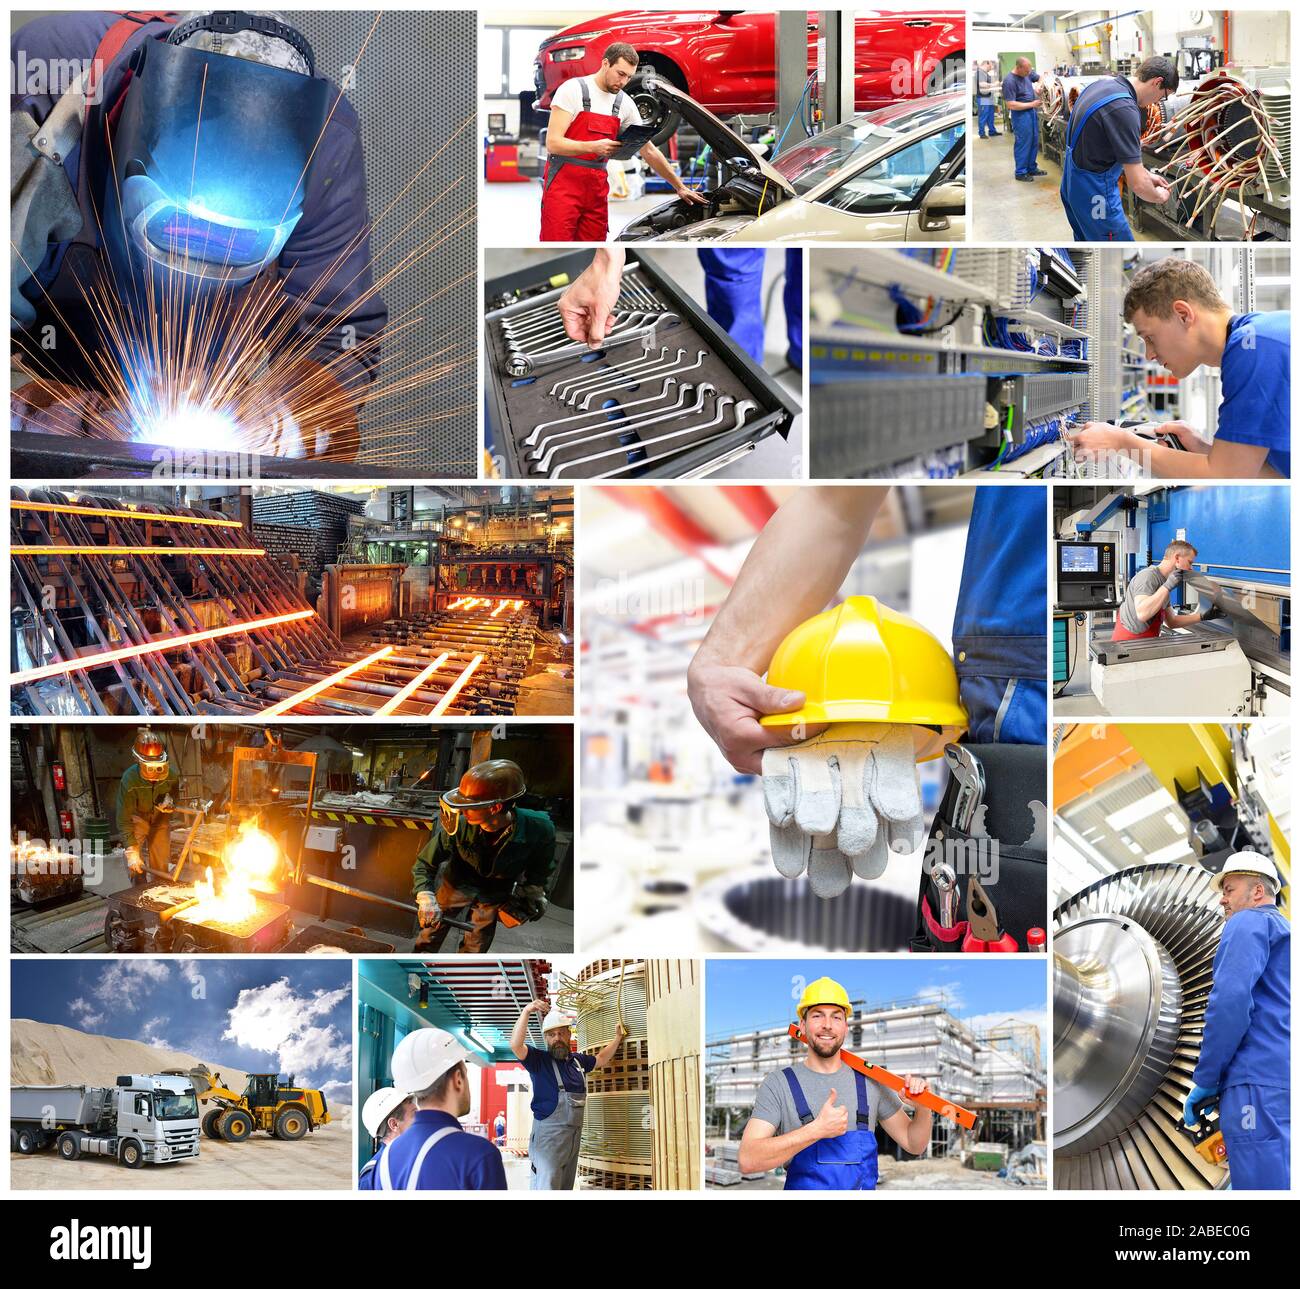 Berufe in Industrie und Handel - Menschen bei der Arbeit in der gewerblichen Wirtschaft Stockfoto